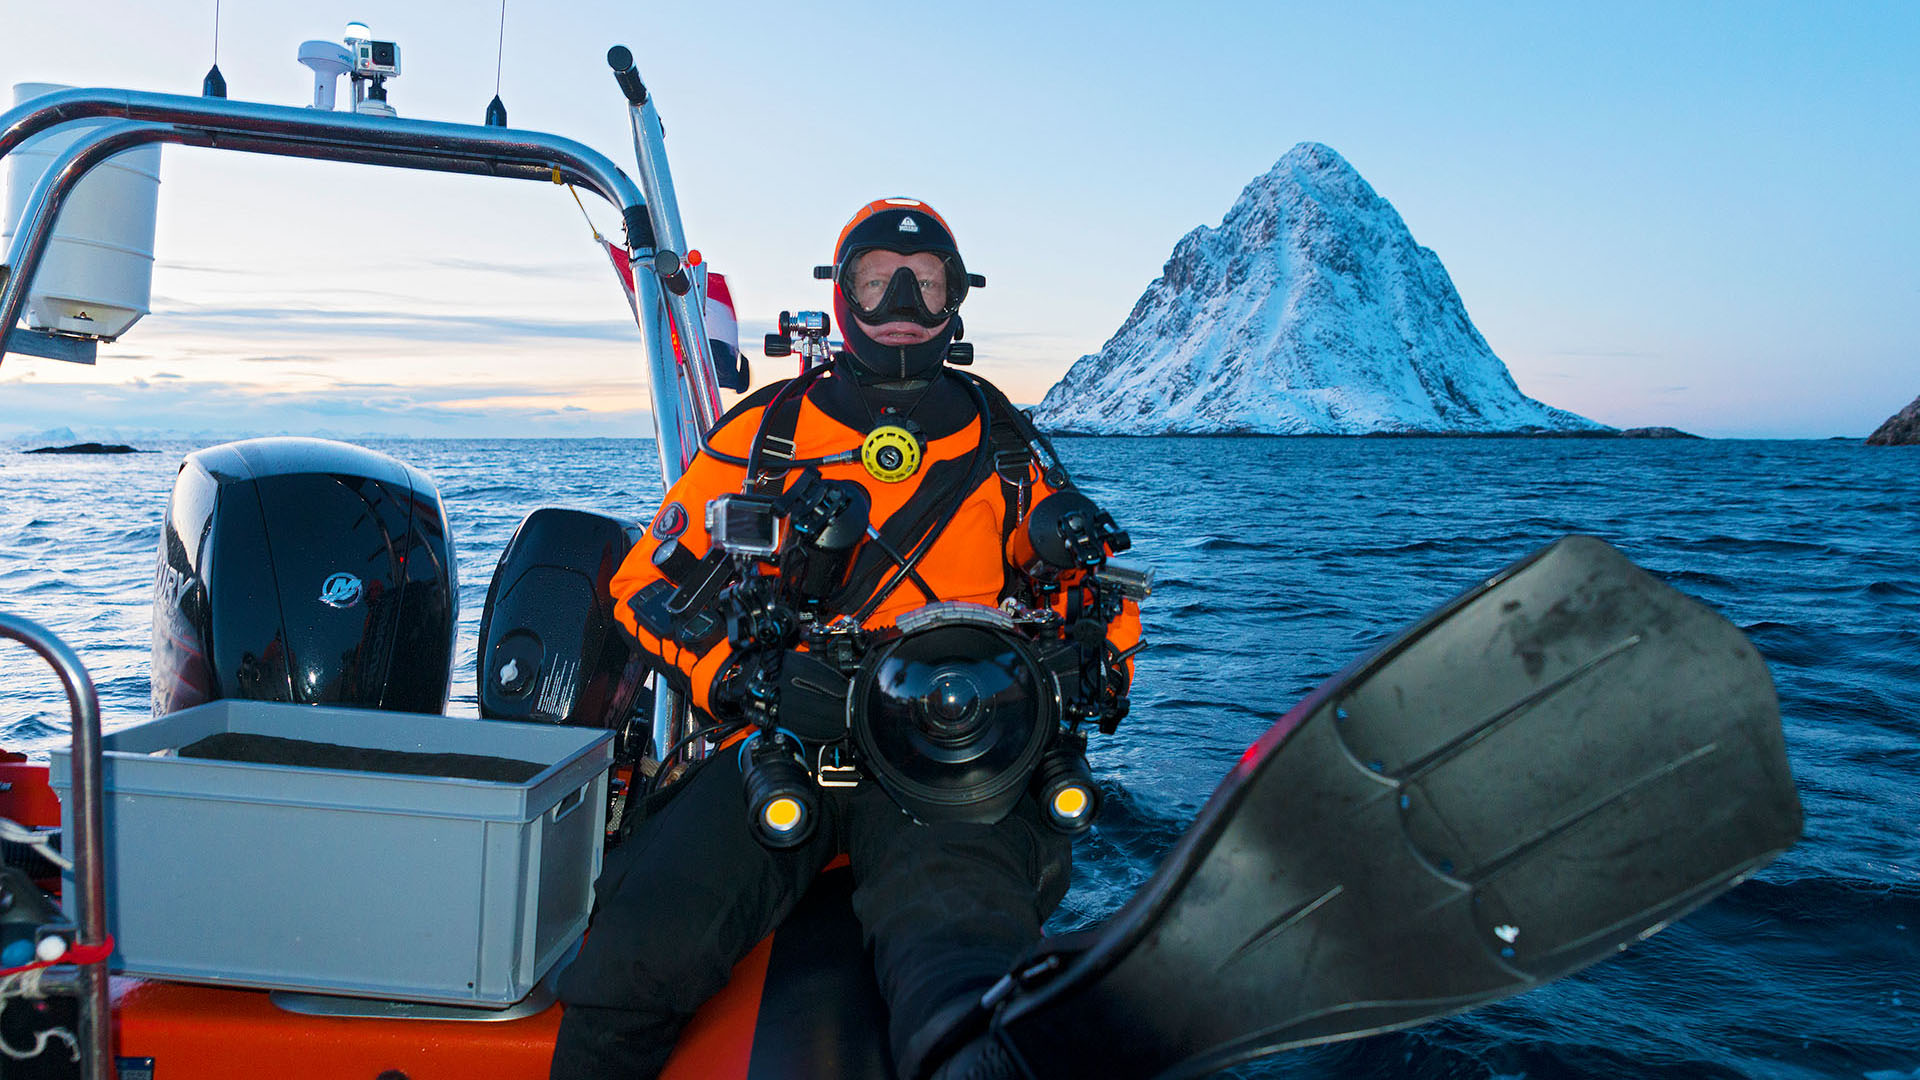 expeditie orka's bultruggen - Avonturier Melvin Redeker in duikuitrusting